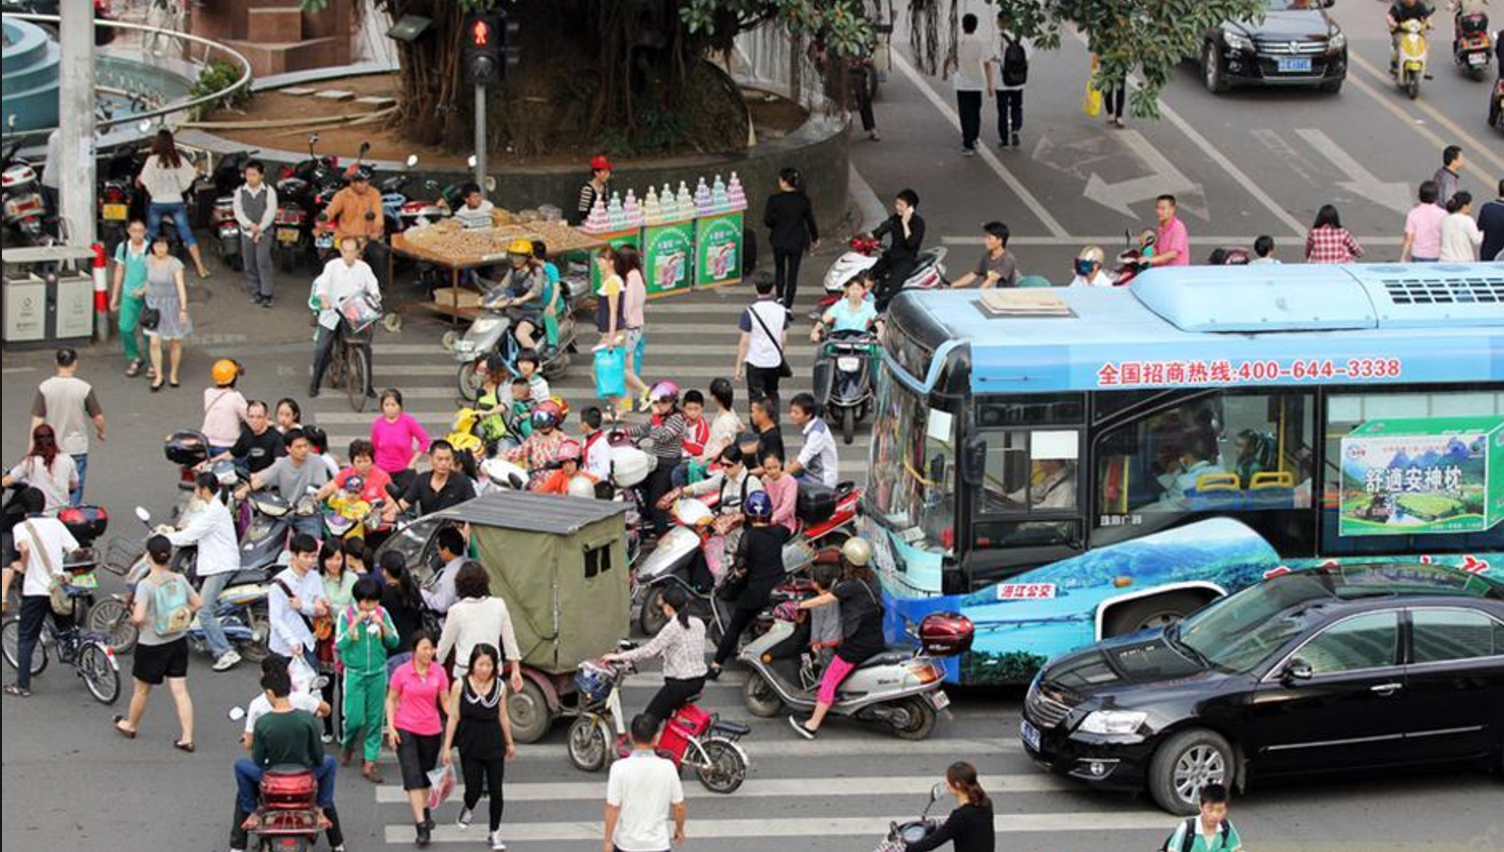 一直以来,"中国式过马路"都被诟病为道路交通混乱的一大根源